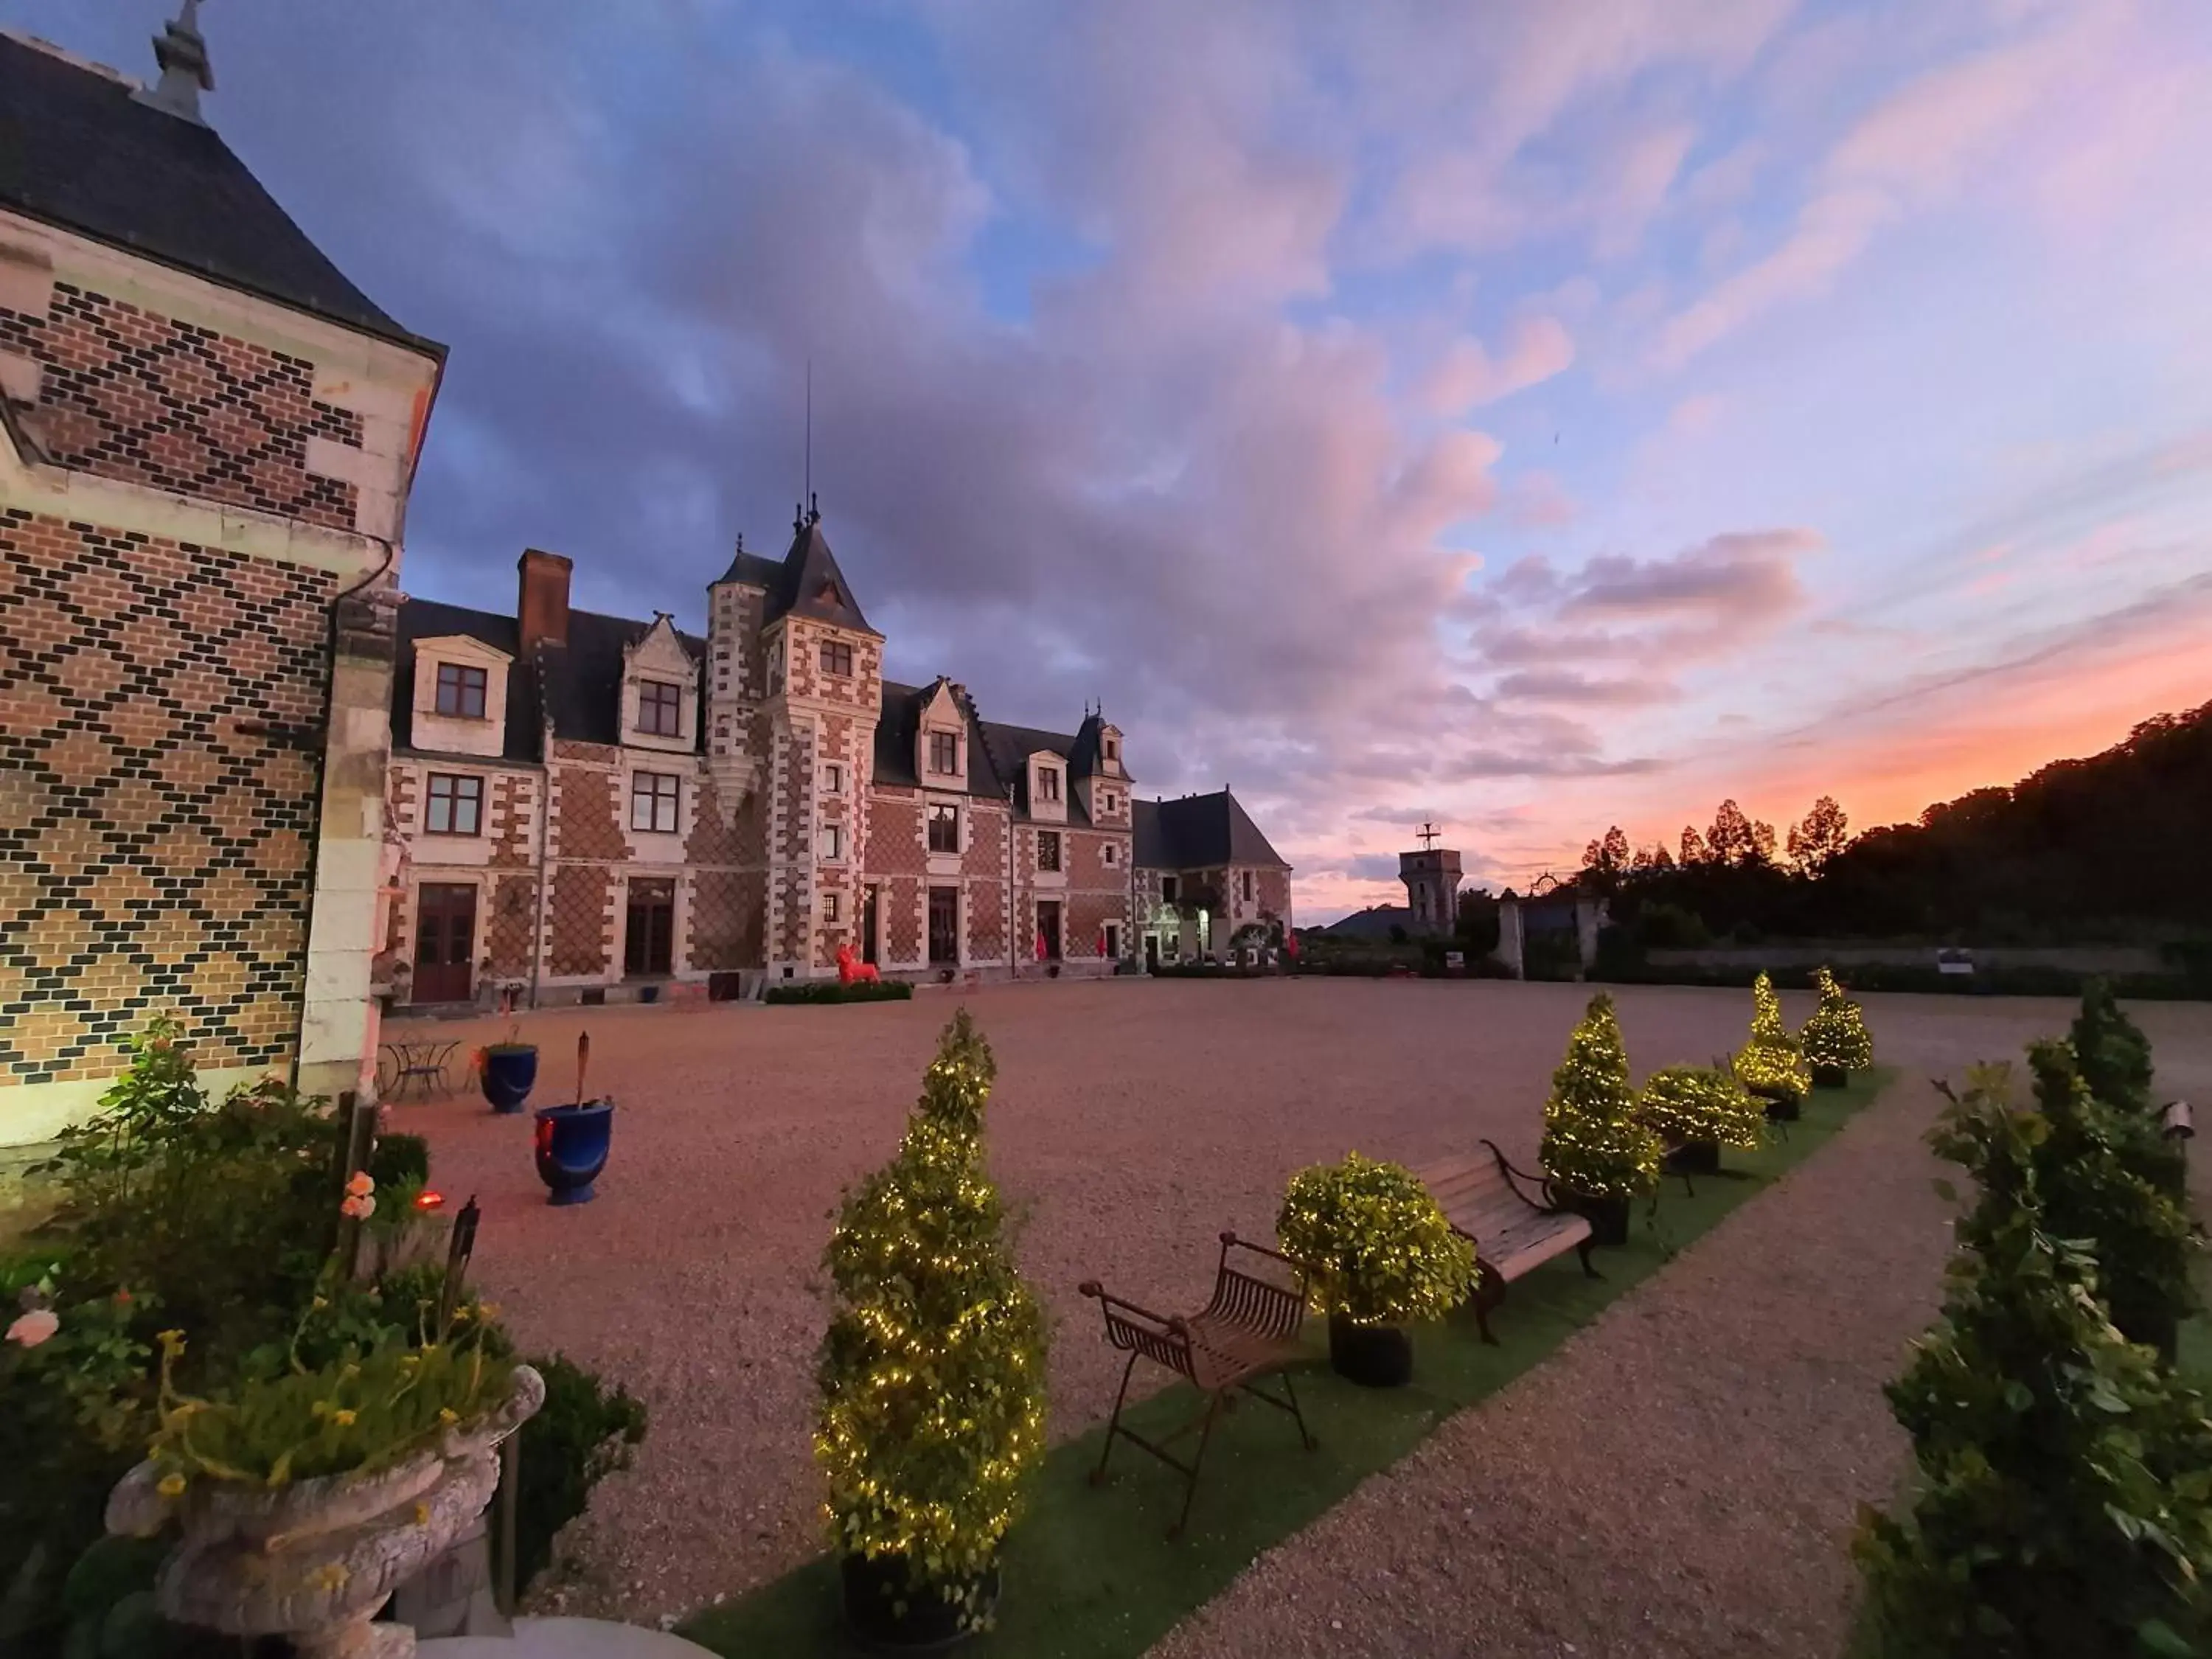 Property Building in Chateau de Jallanges - Les Collectionneurs